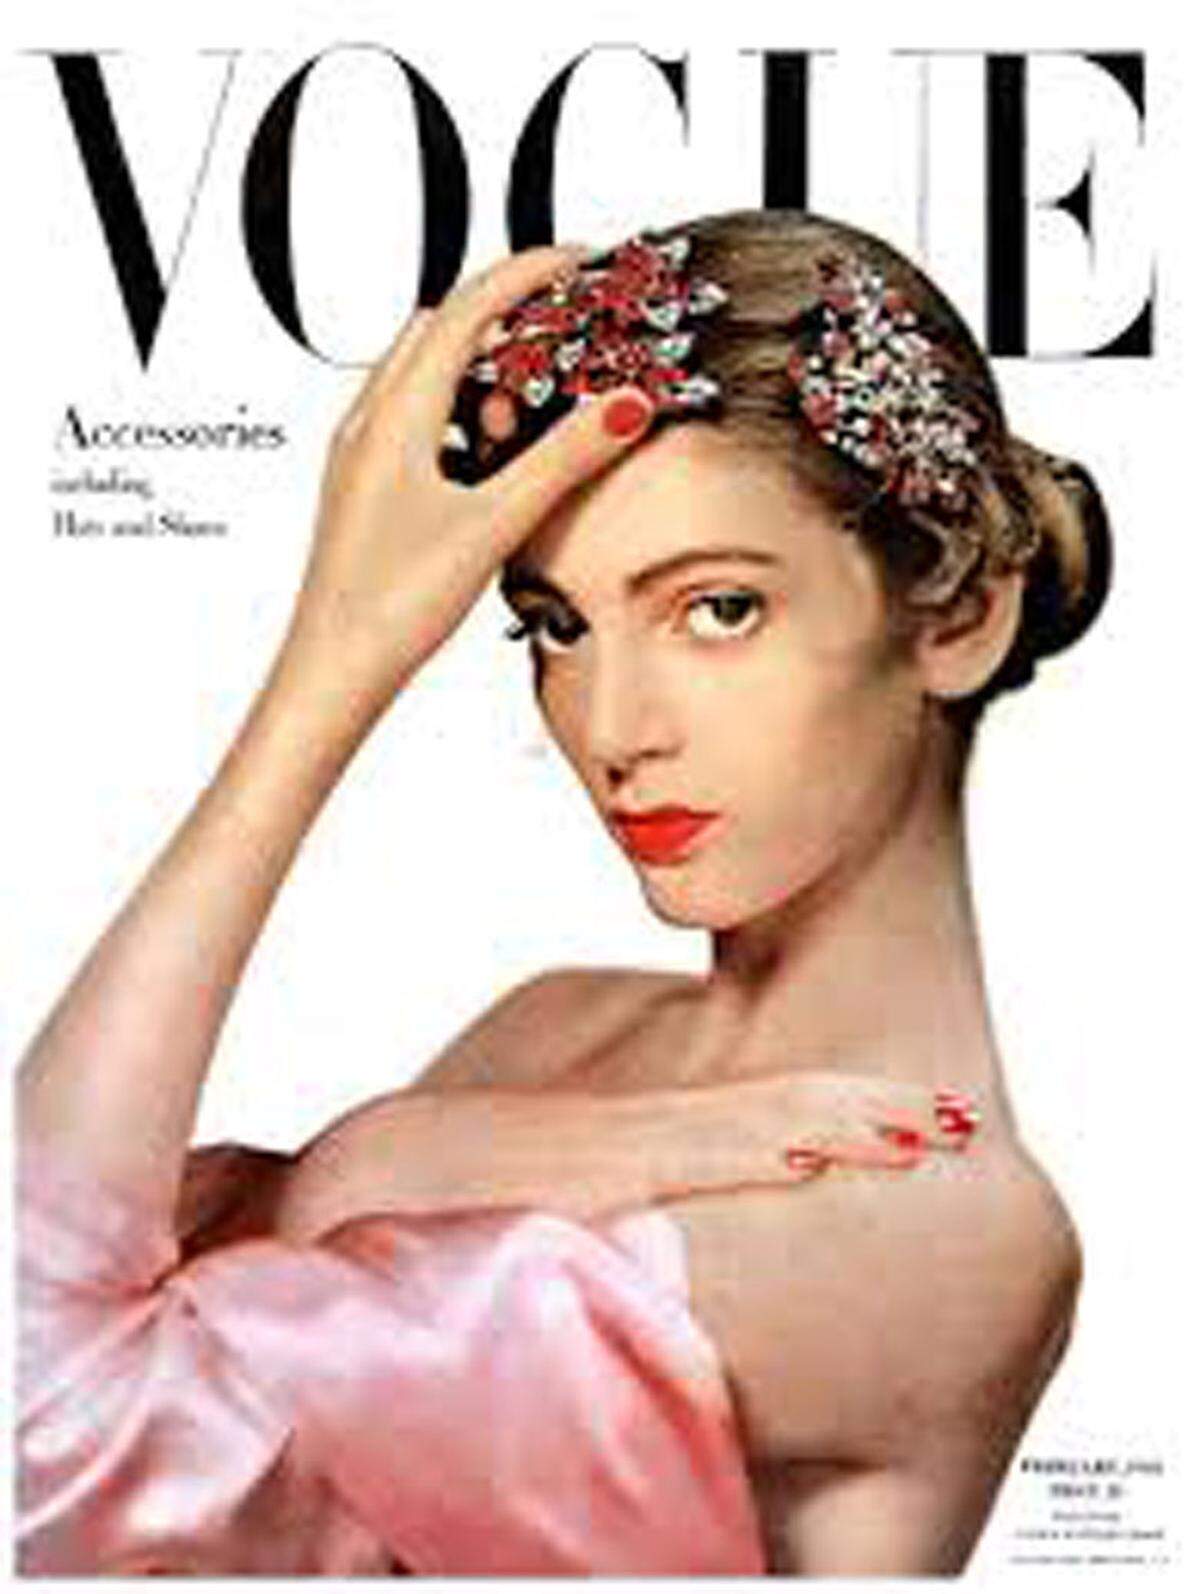 Das Geheimnis ihres Erfolges ist Dell'Orefice bis heute nicht ganz klar: "Mit 15 Jahren auf dem Cover der Vogue zu sein, hat mir nichts bedeutet. Ich habe wirklich nicht verstanden, was sie in mir sahen, als sie mich angeschaut haben", meinte das 82-jährige Model im Gespräch mit der Daily Mail.